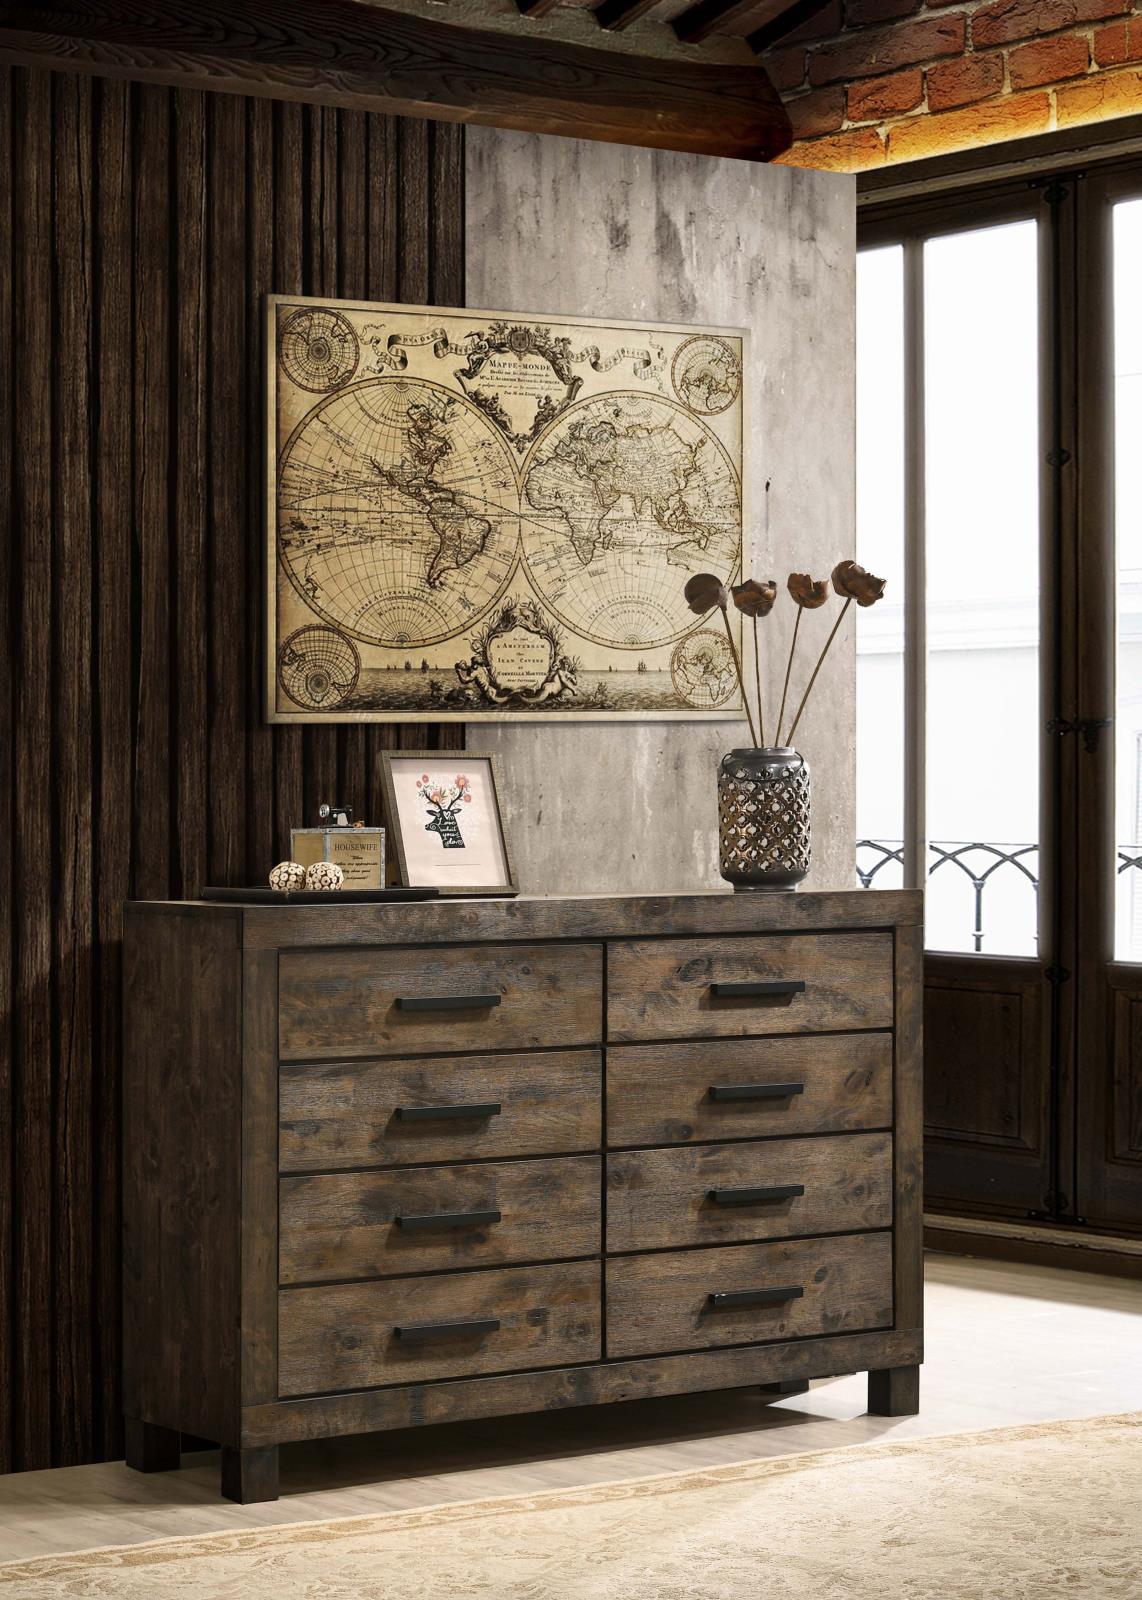 Woodmont Rustic Golden Brown 8-Drawer Dresser - 222633 - Bien Home Furniture &amp; Electronics